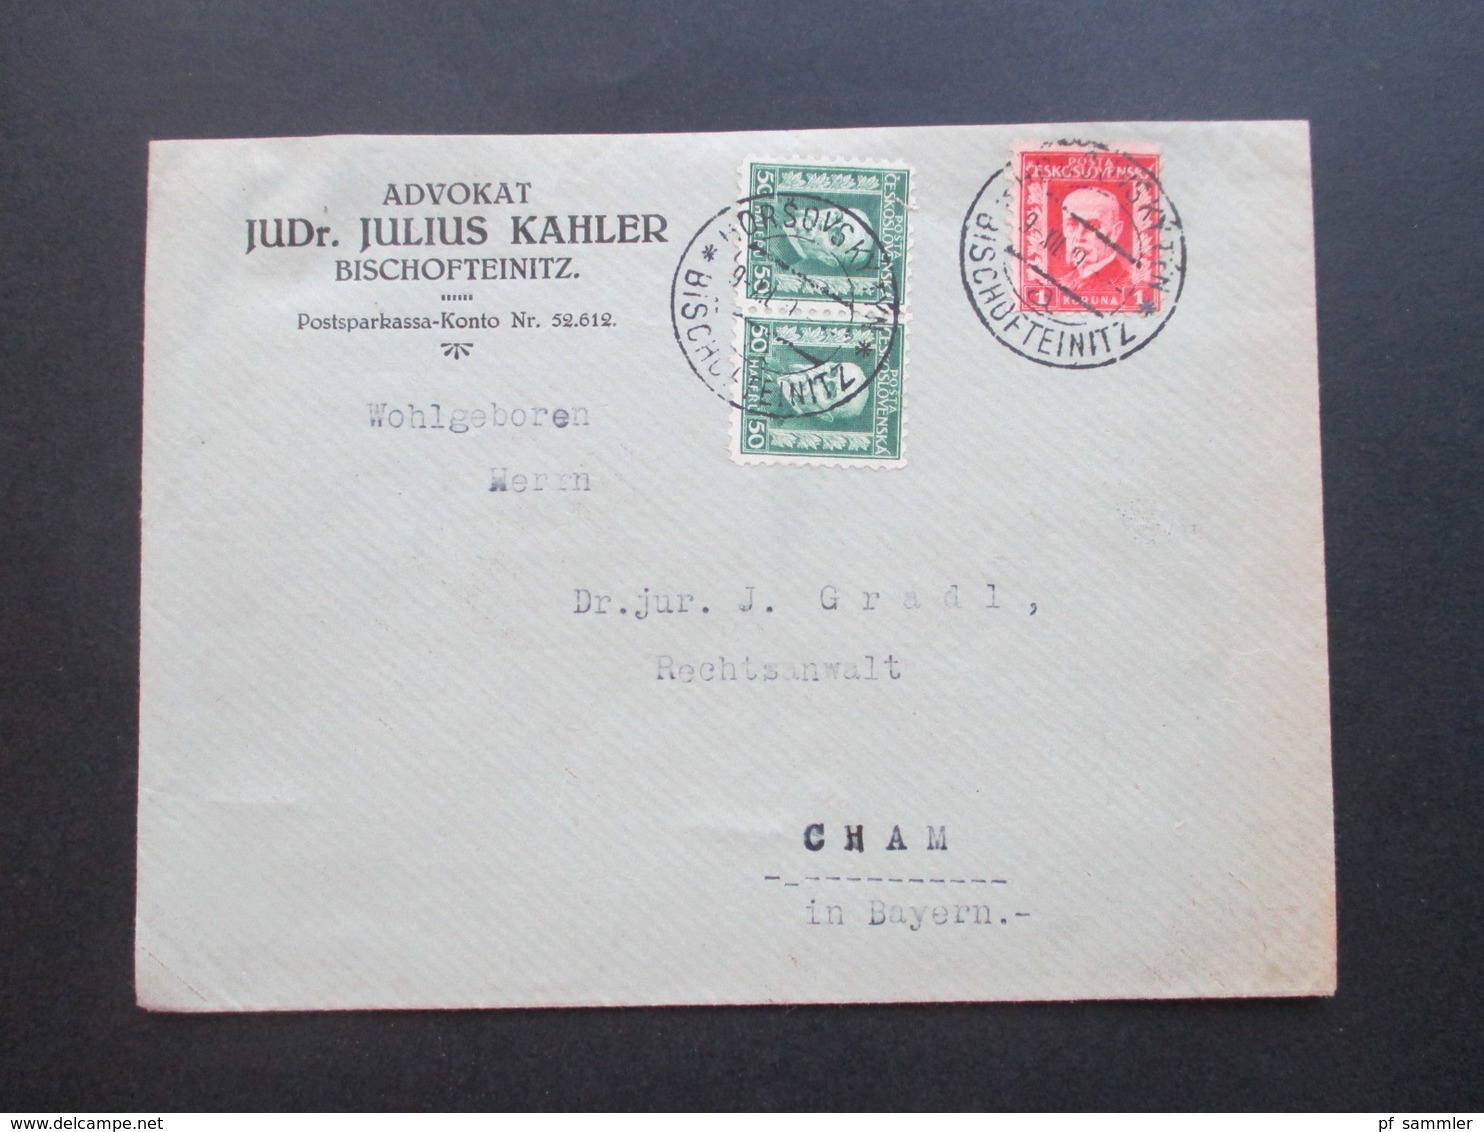 CSSR / Sudetenland 1929 Beleg Aus Bischofteinitz Advokat JUDr. Julius Kahler Zweisprachiger Stempel - Cartas & Documentos